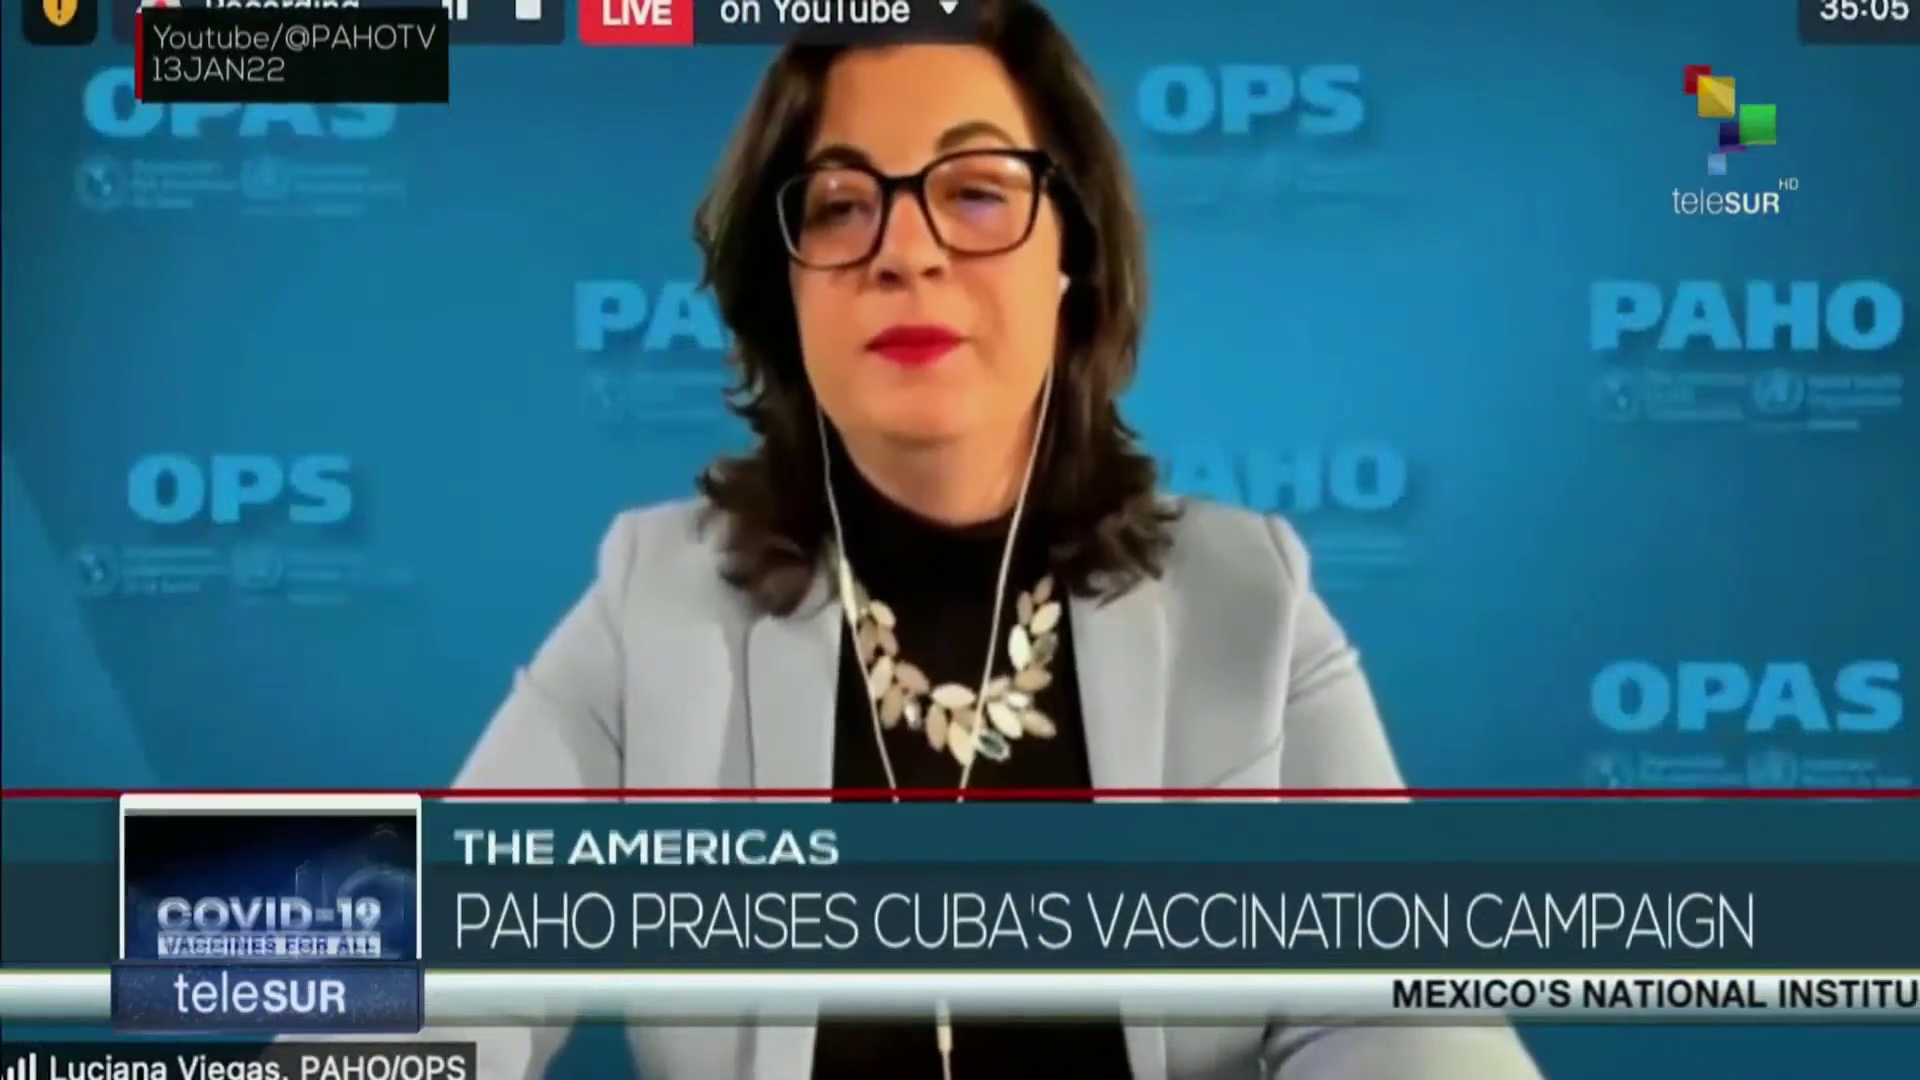 FTS 18:30 13-01: PAHO praises Cuba vaccination campaing